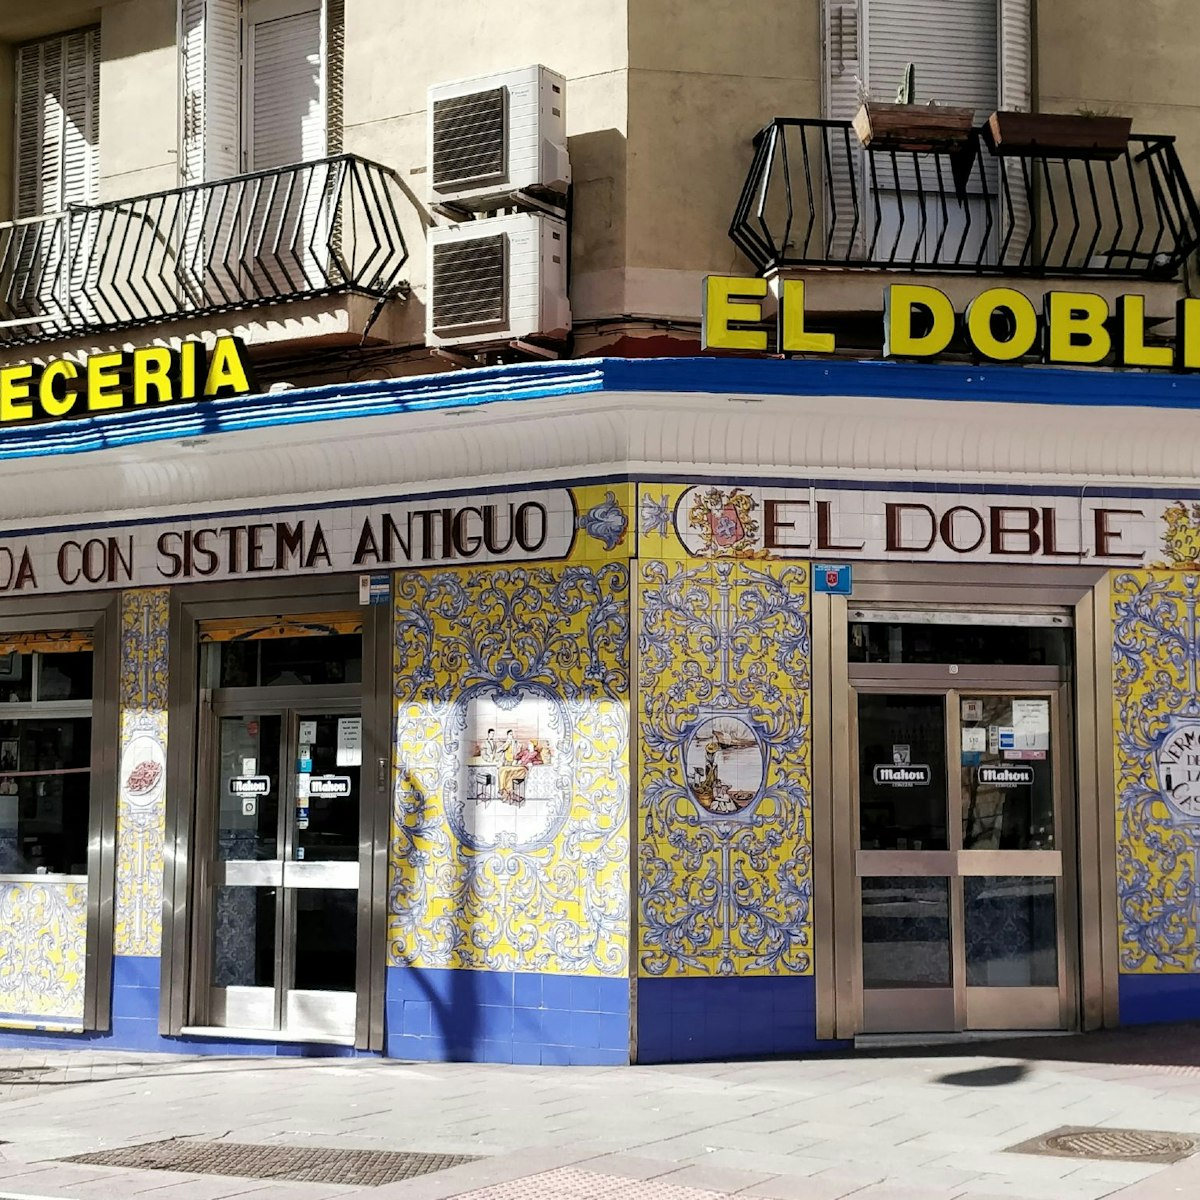 The tiled facade at Cervecería El Doble.